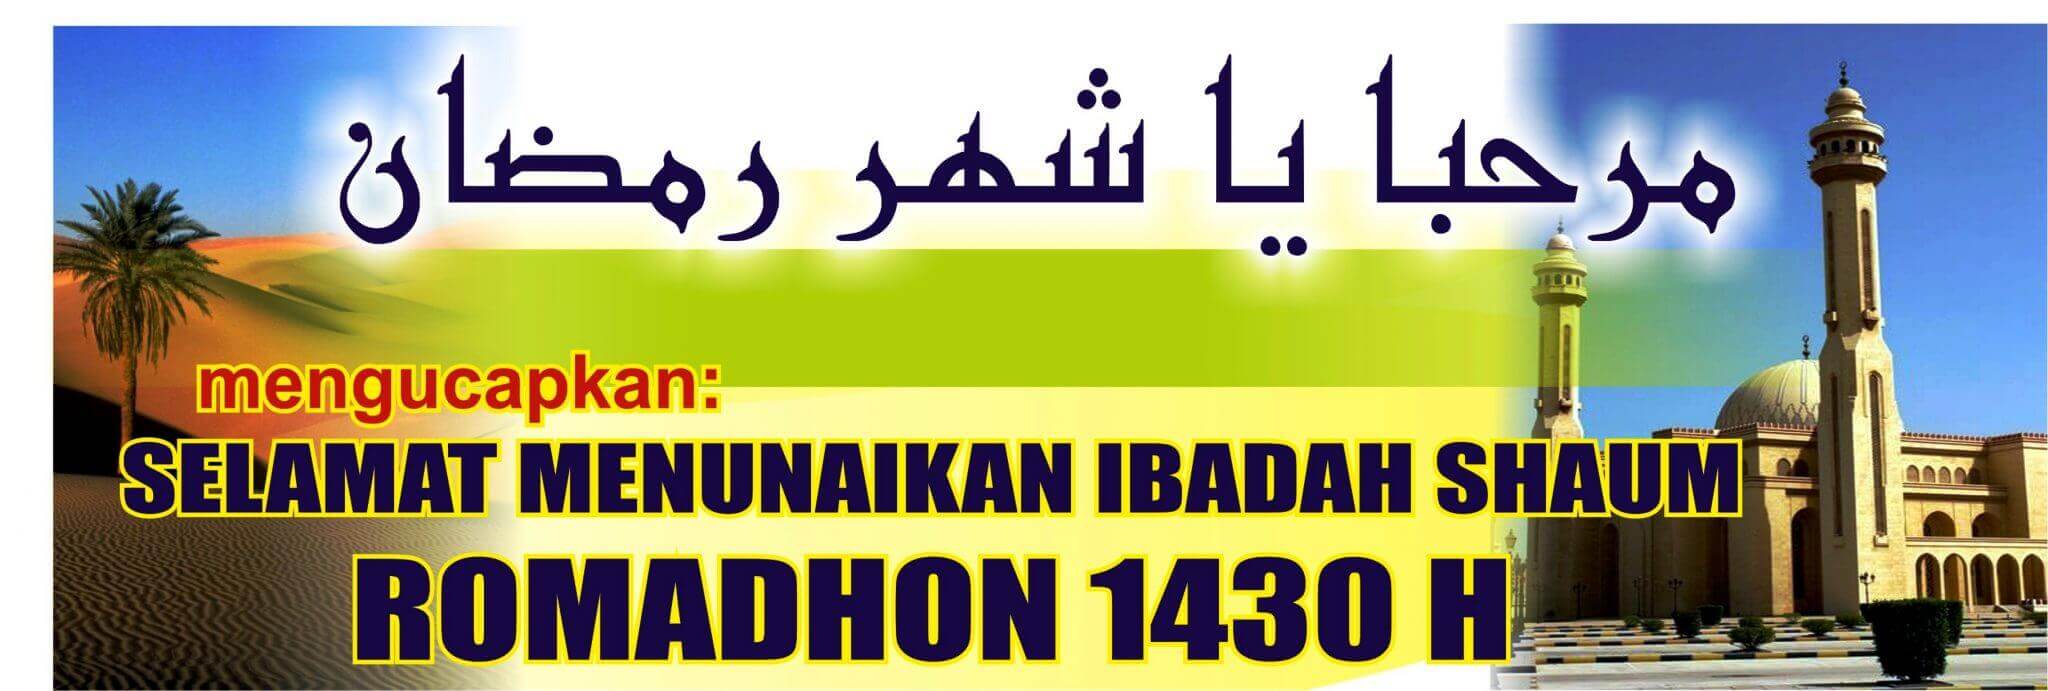 Spanduk Ramadhan vector download